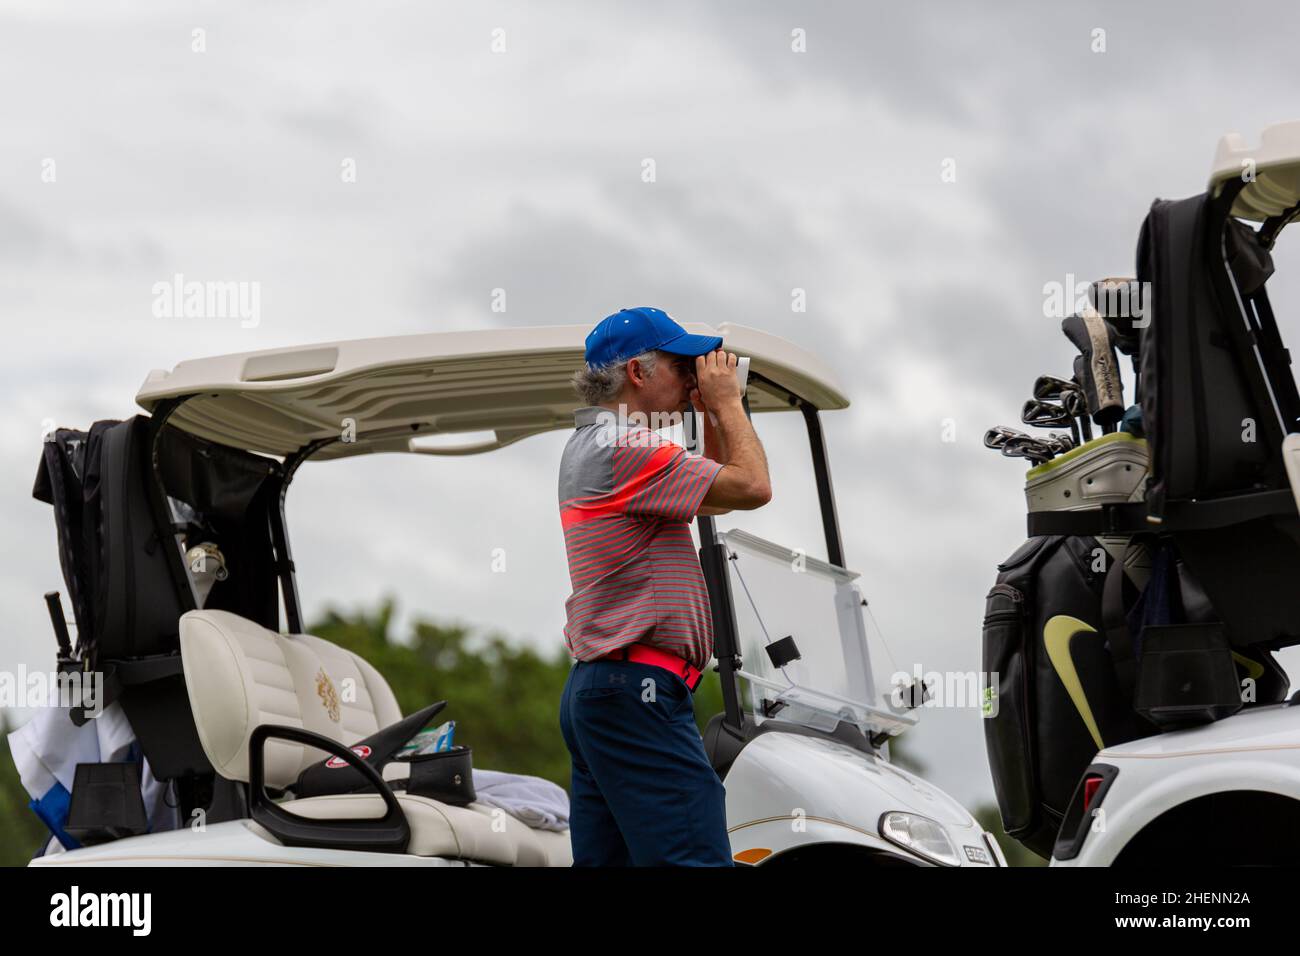 Golfspieler spielt ab. Mann, der Golfball vom Abschlagkasten im Golf Club in Miami, Florida, trifft. Golftour. Outdoor-Sportereignis. Stockfoto